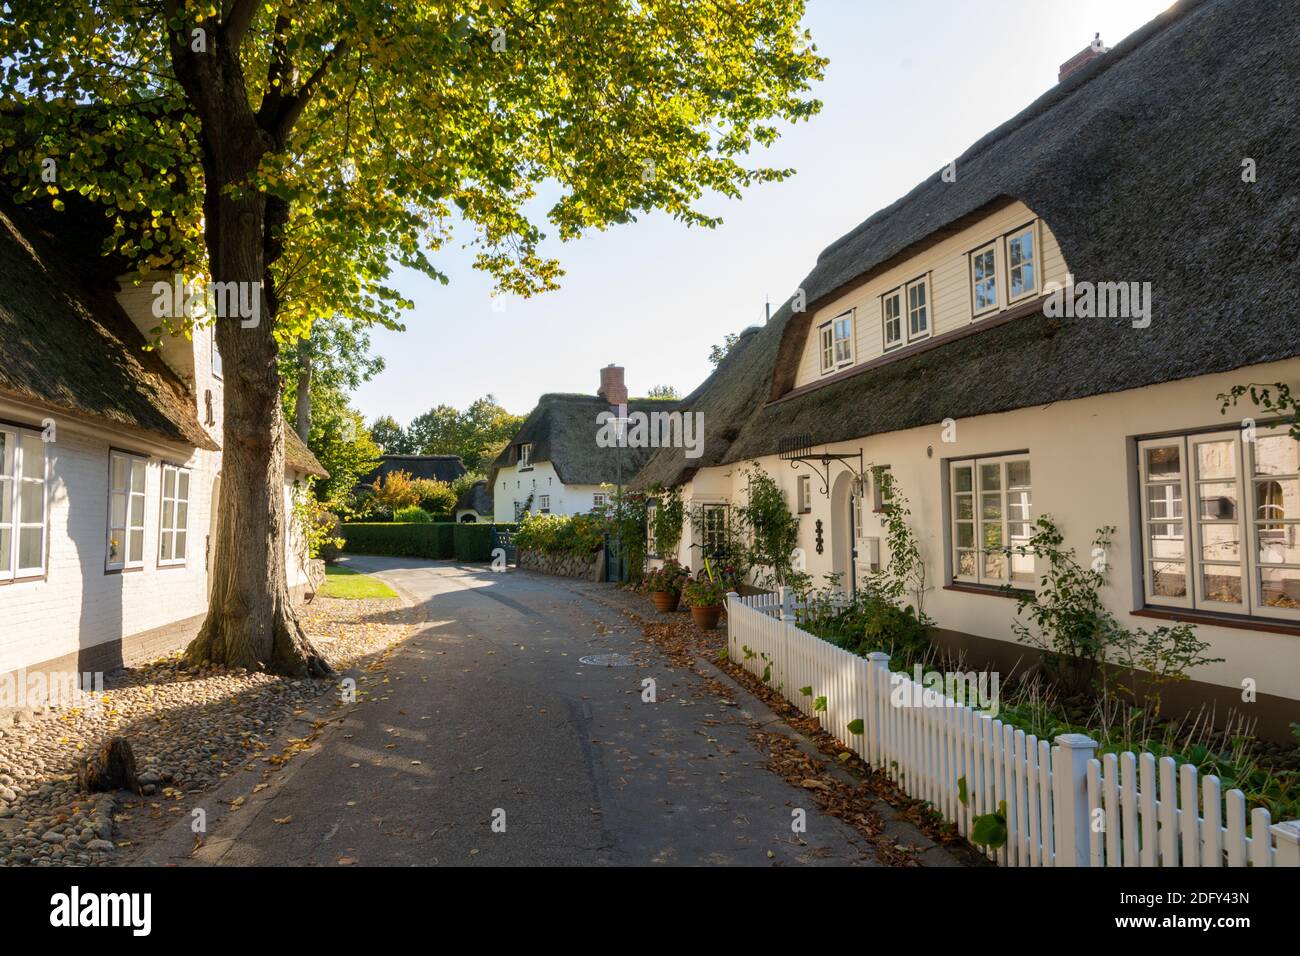 Nieblum, Allemagne - 16 octobre 2020 : maisons blanches en chaume avec clôtures blanches dans une rue de Föhr Banque D'Images